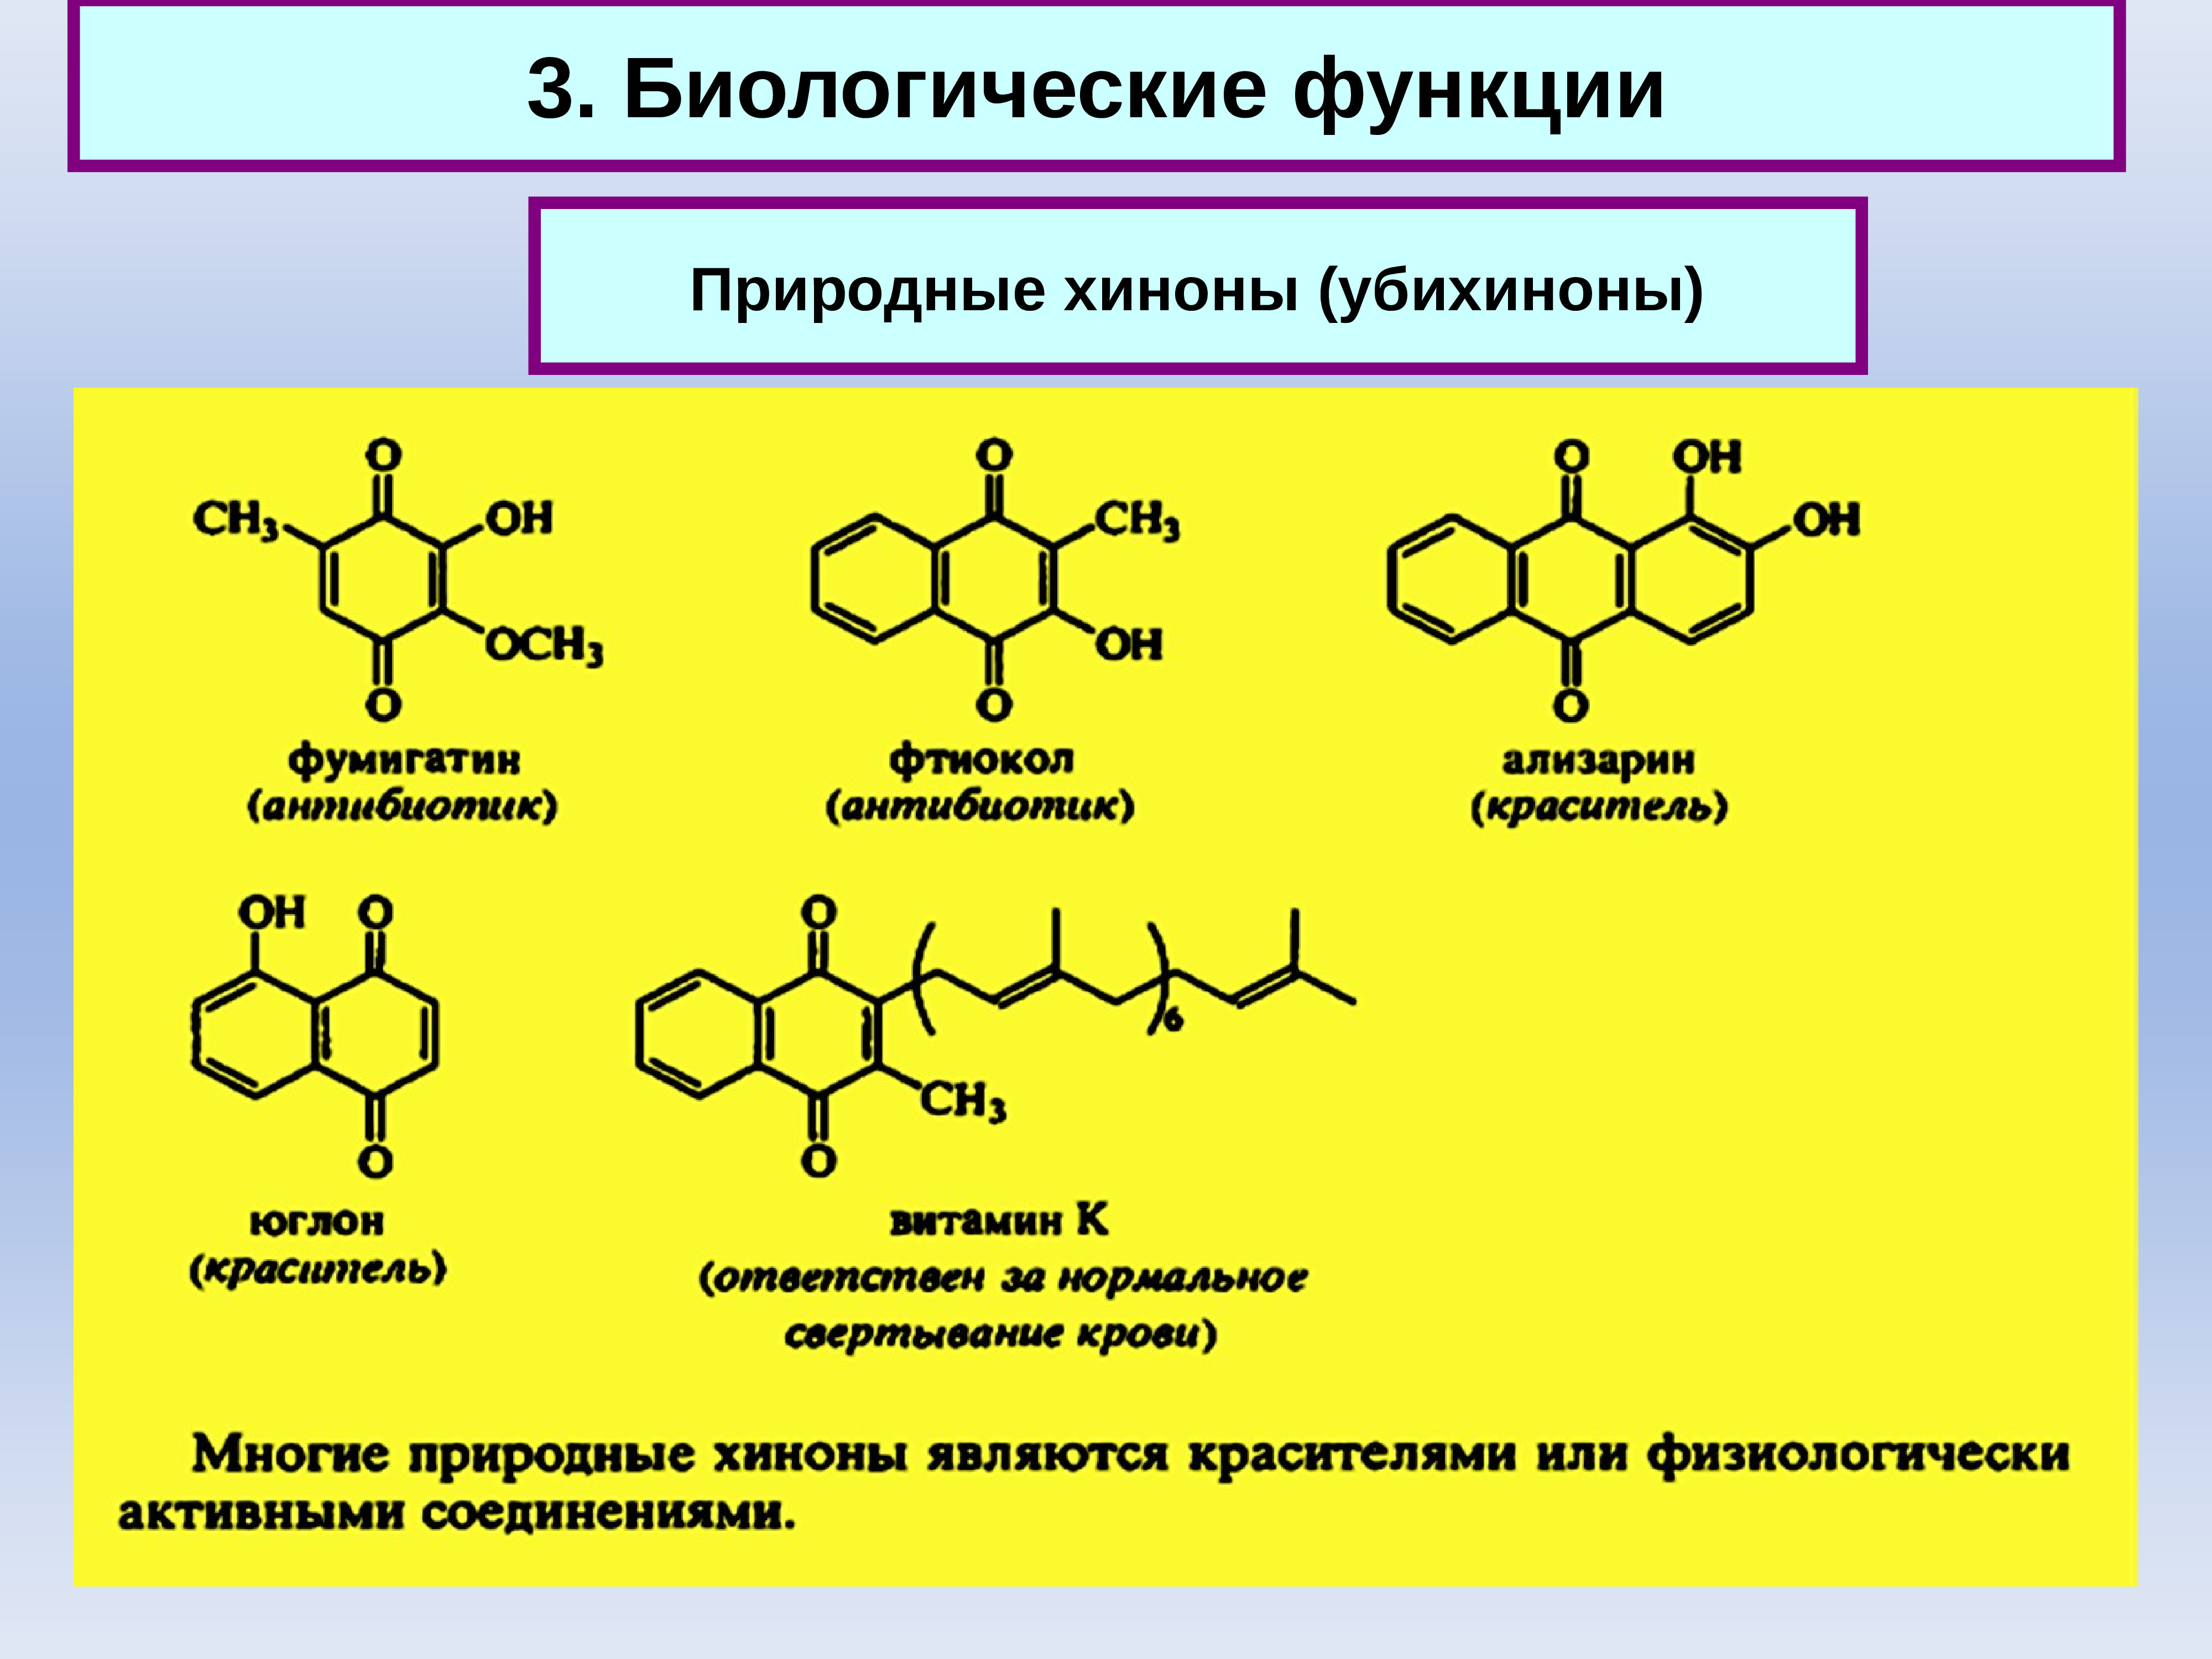 Окисление природных соединений. Хиноны и убихиноны. Биороль хинона. Хиноны классификация. Окисление гидрохинона в хинон реакция.